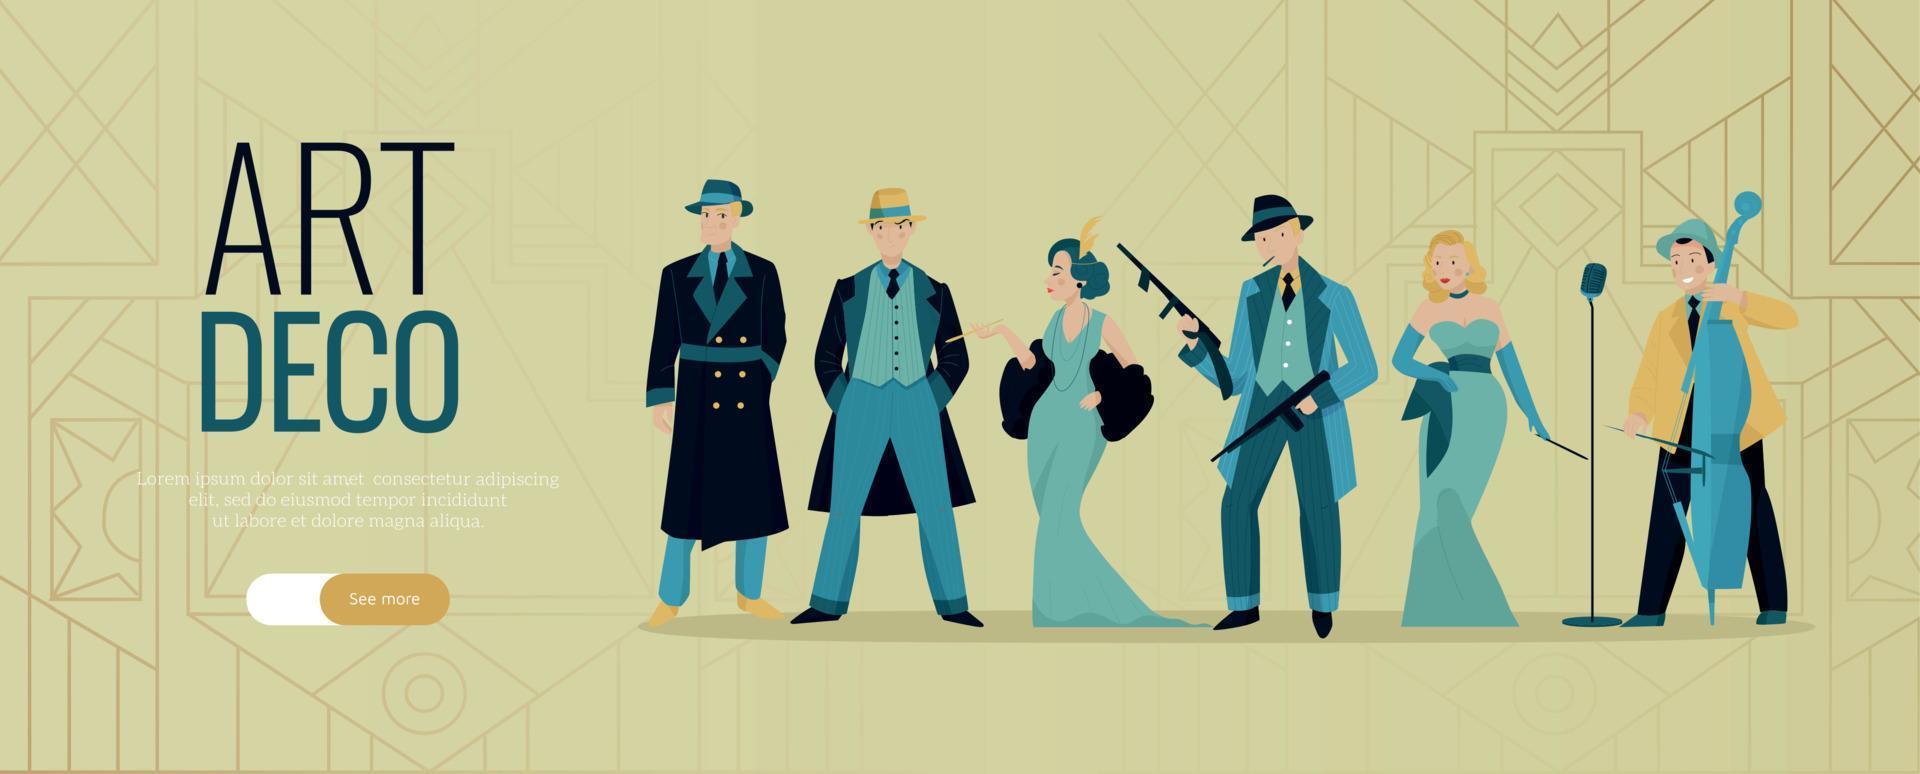 Art Deco People Banner vector